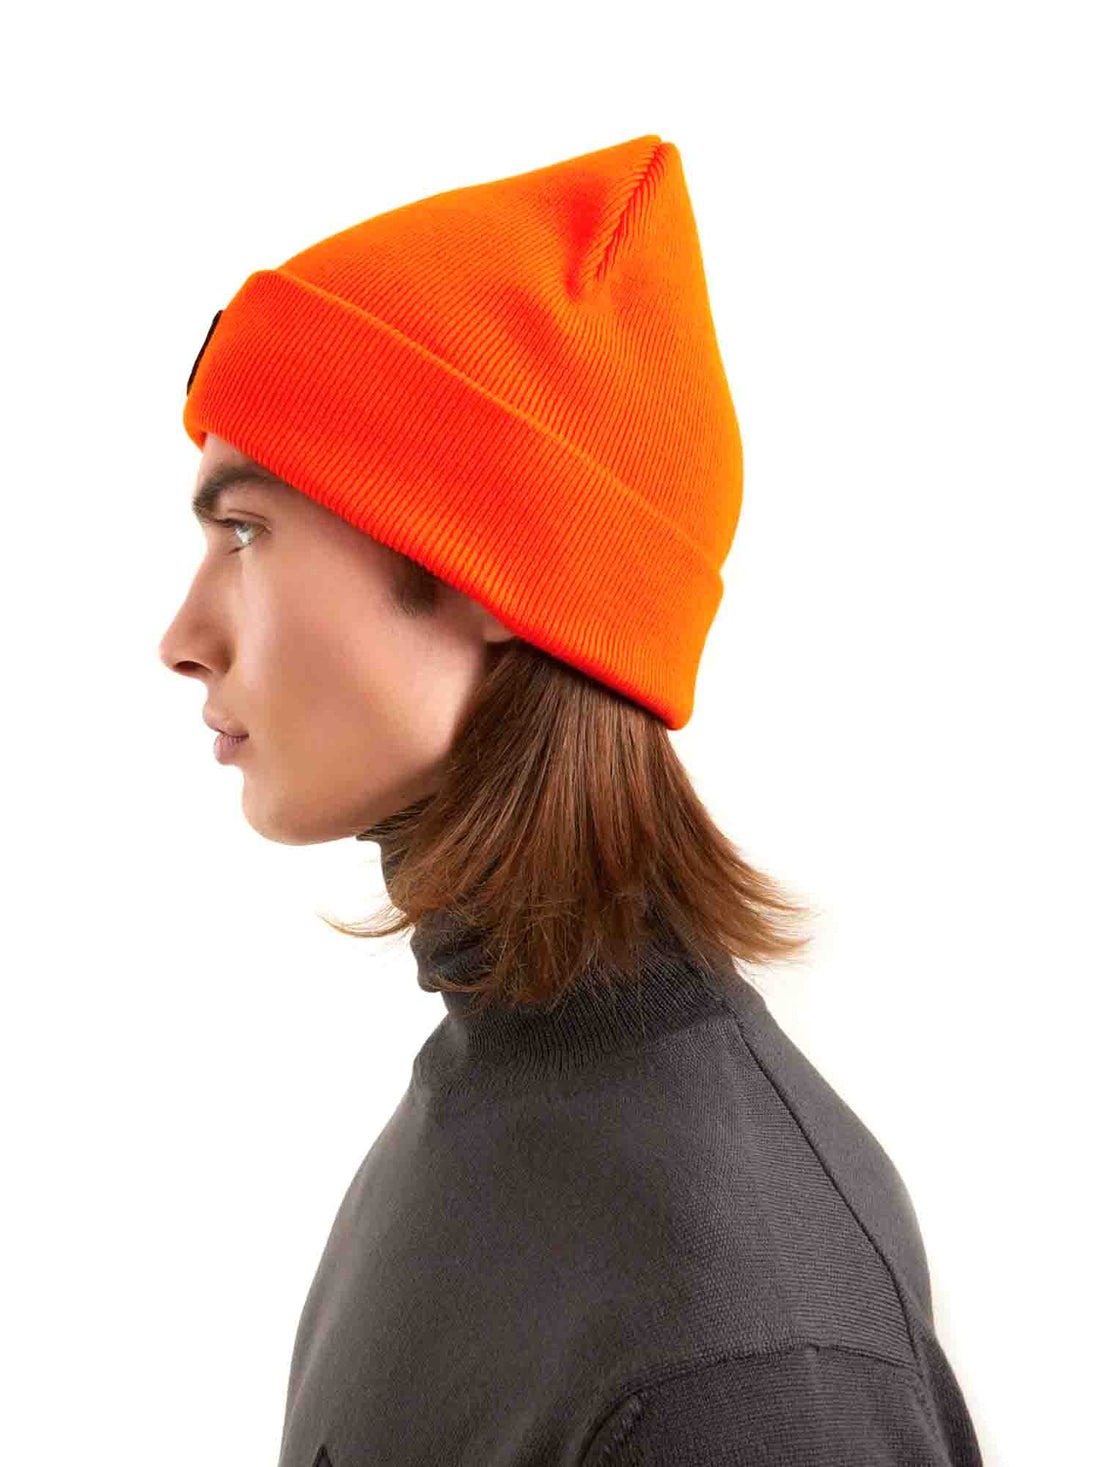 Cappelli Arancio Refrigiwear